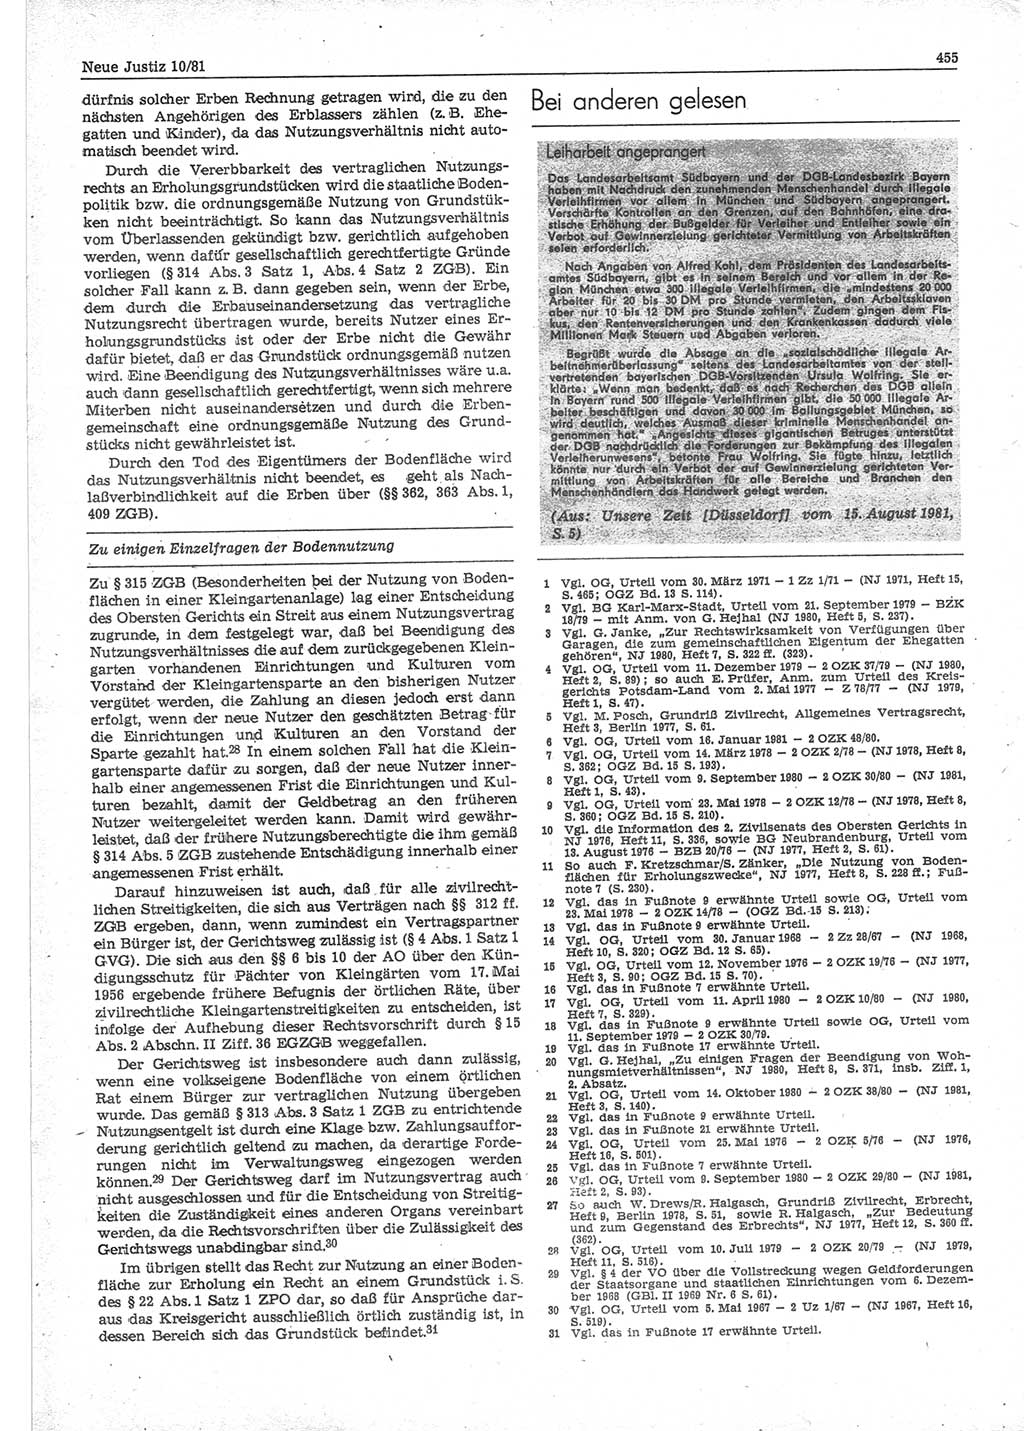 Neue Justiz (NJ), Zeitschrift für sozialistisches Recht und Gesetzlichkeit [Deutsche Demokratische Republik (DDR)], 35. Jahrgang 1981, Seite 455 (NJ DDR 1981, S. 455)